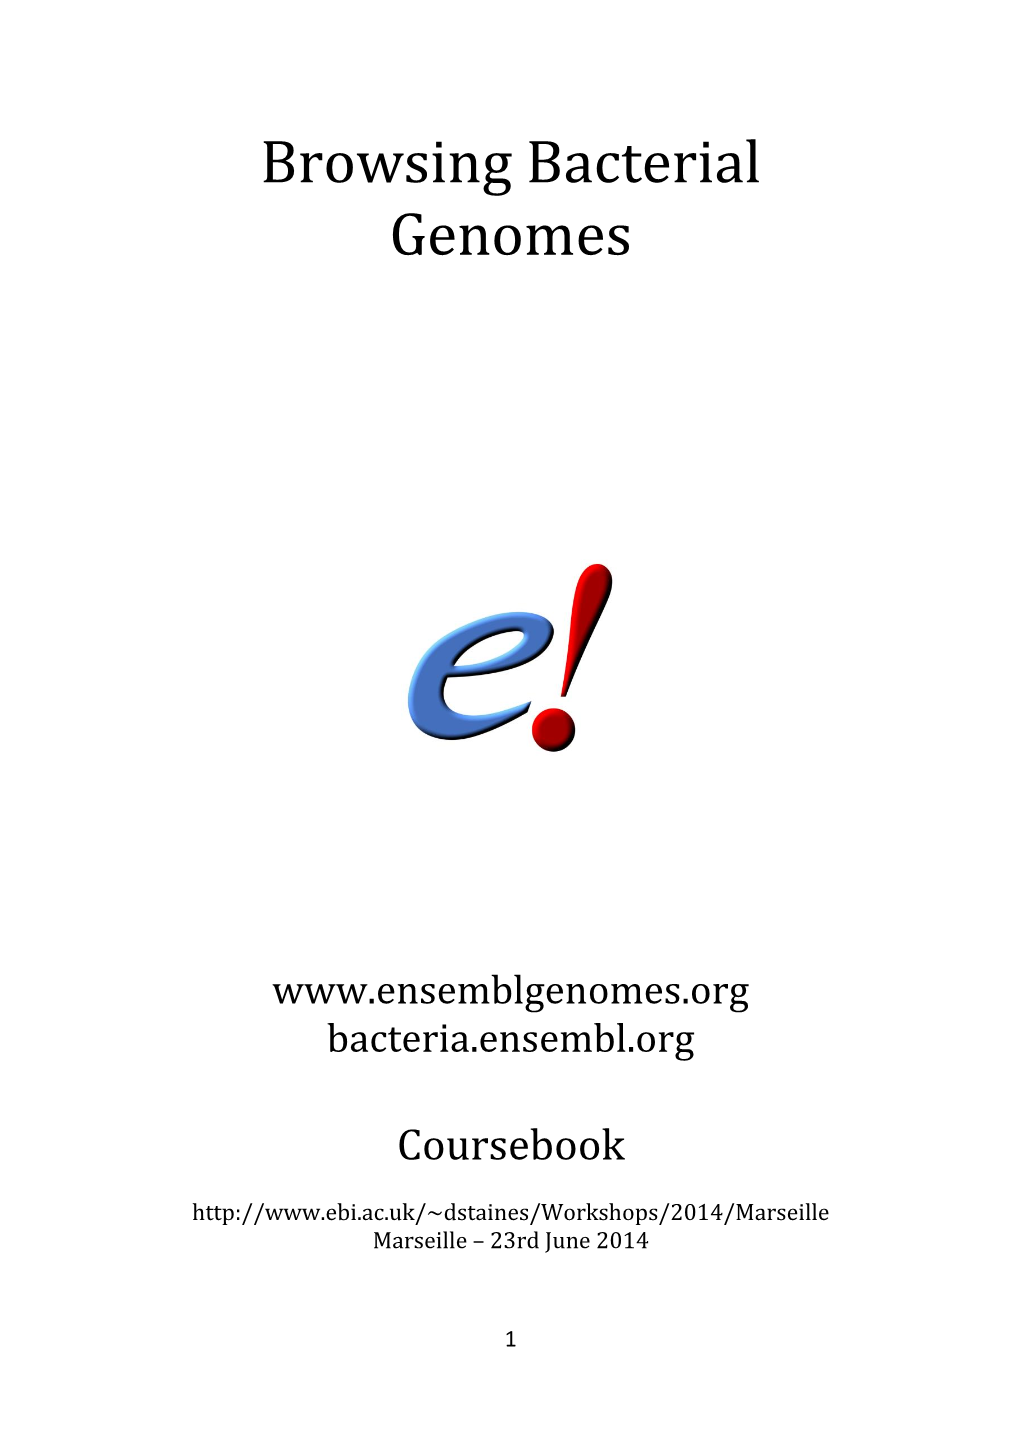 Ensembl Bacteria Coursebook